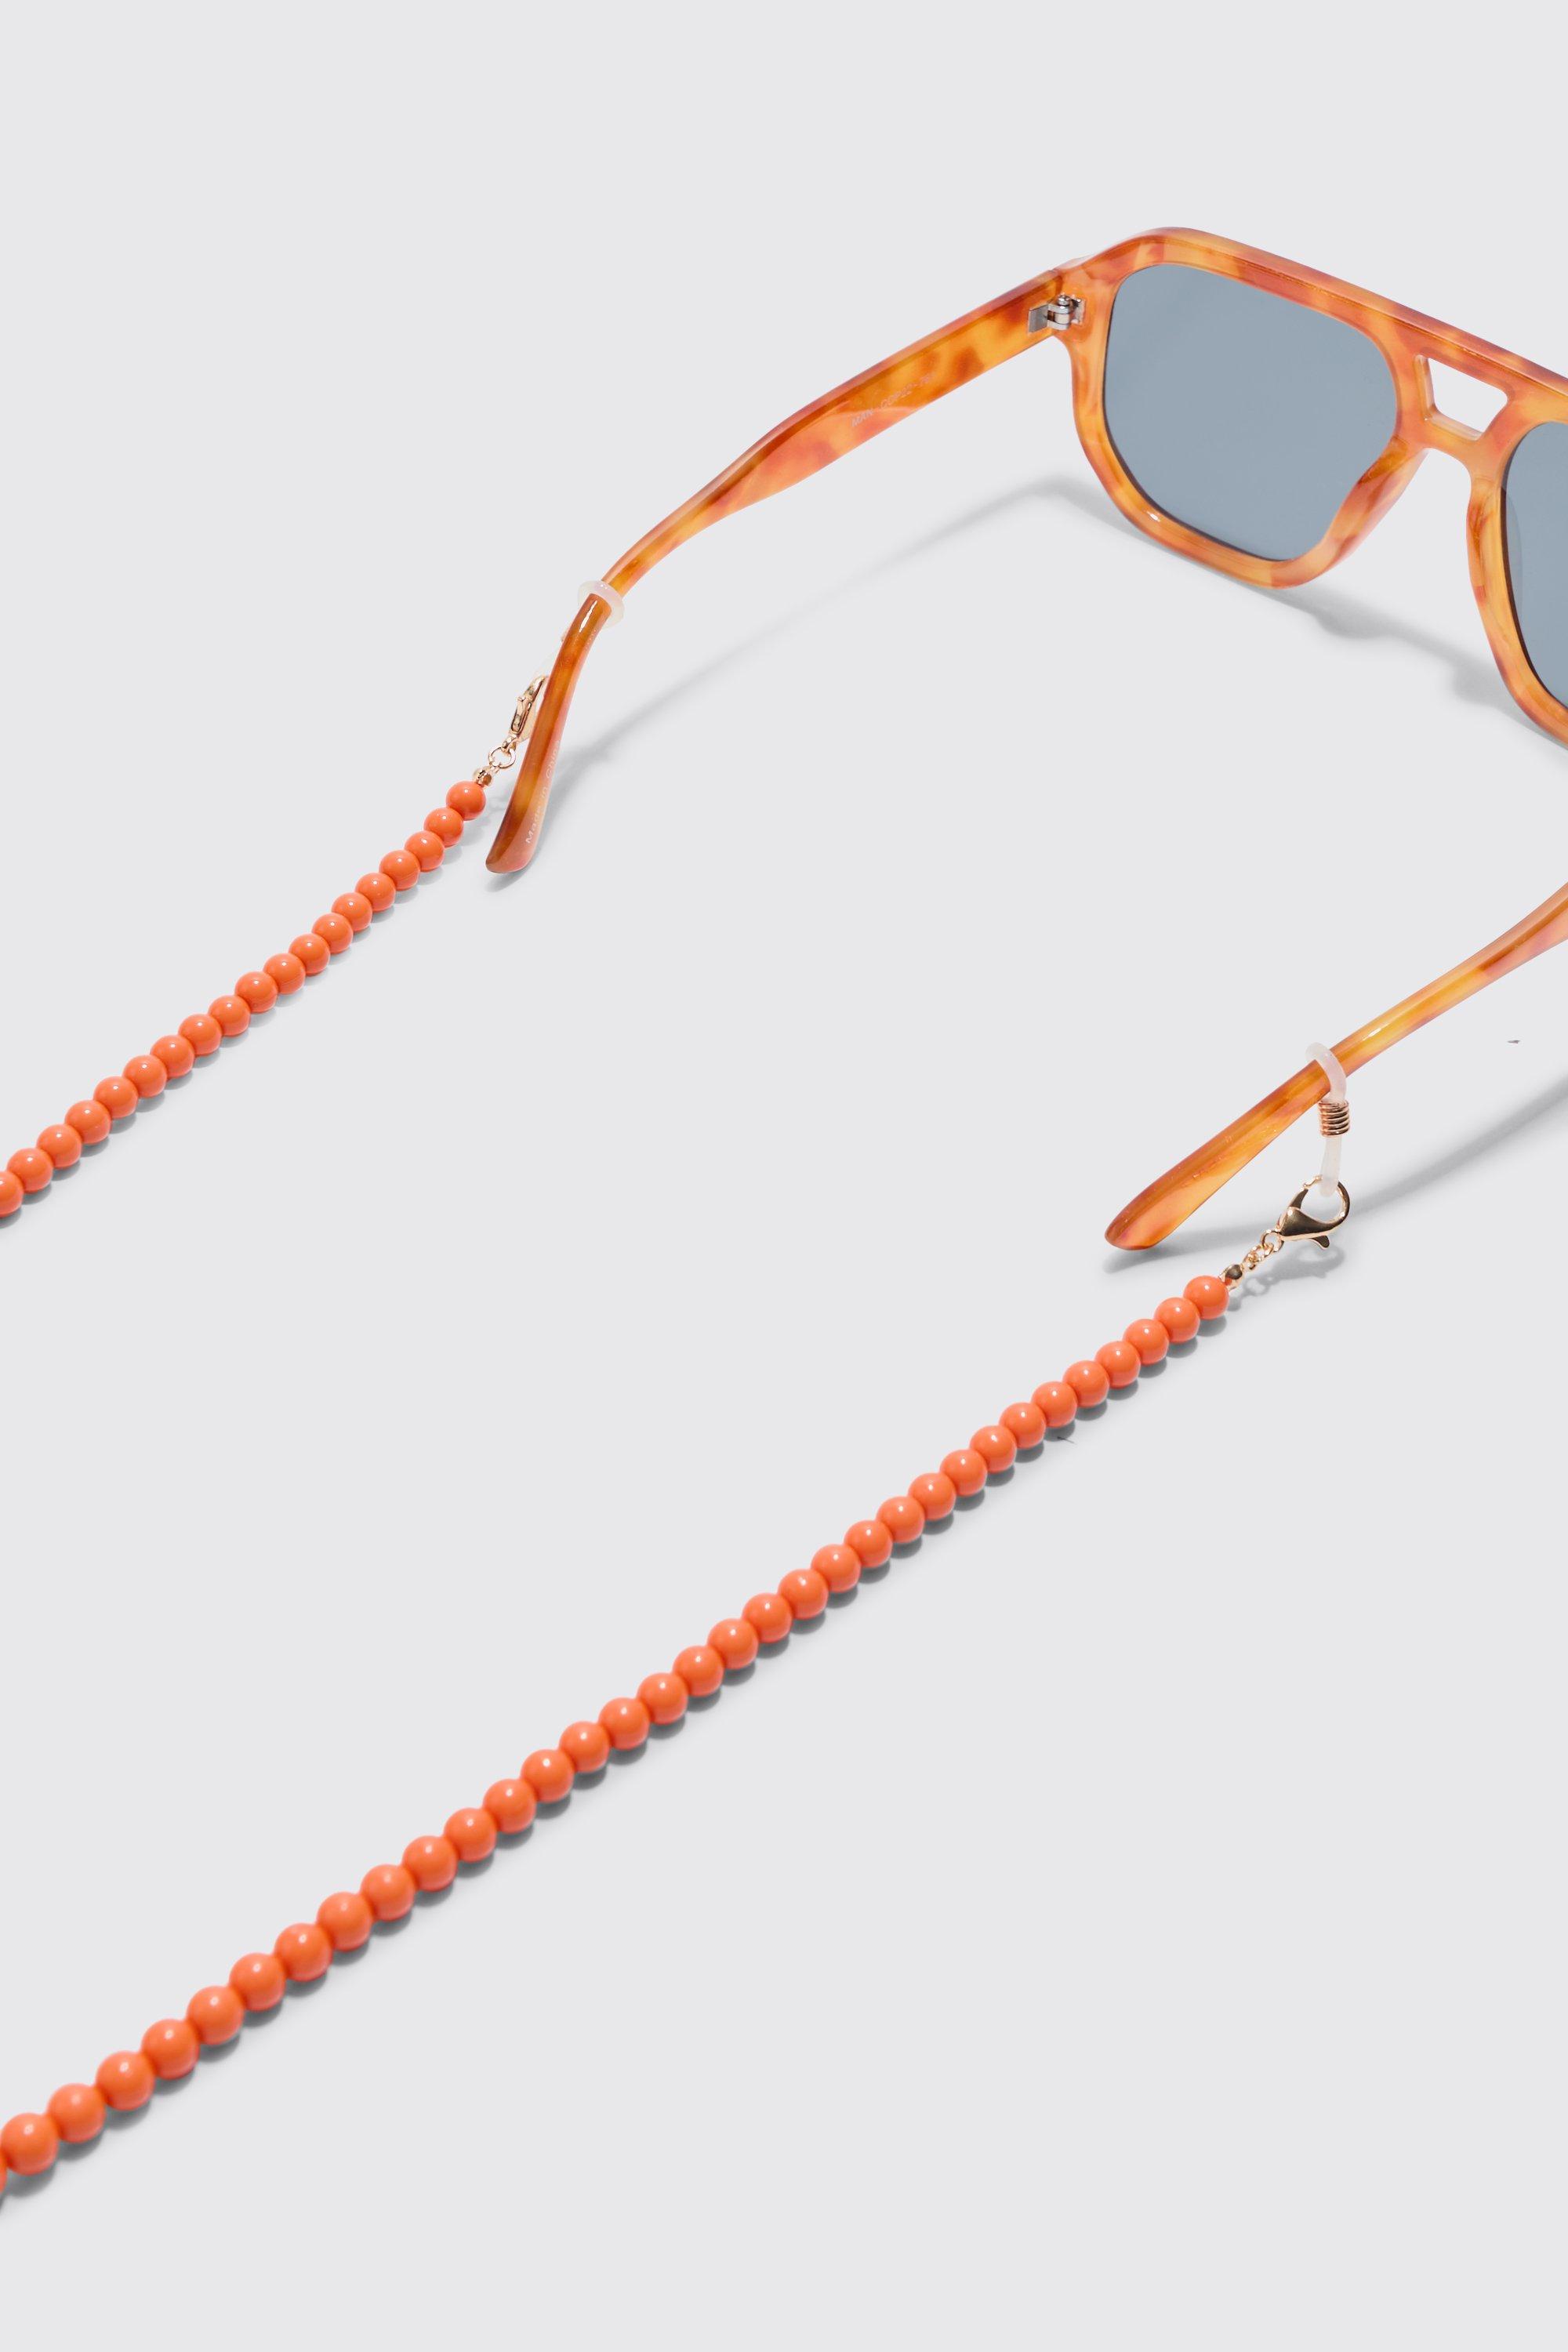 Image of Occhiali da sole a catena color arancio con perline, Arancio